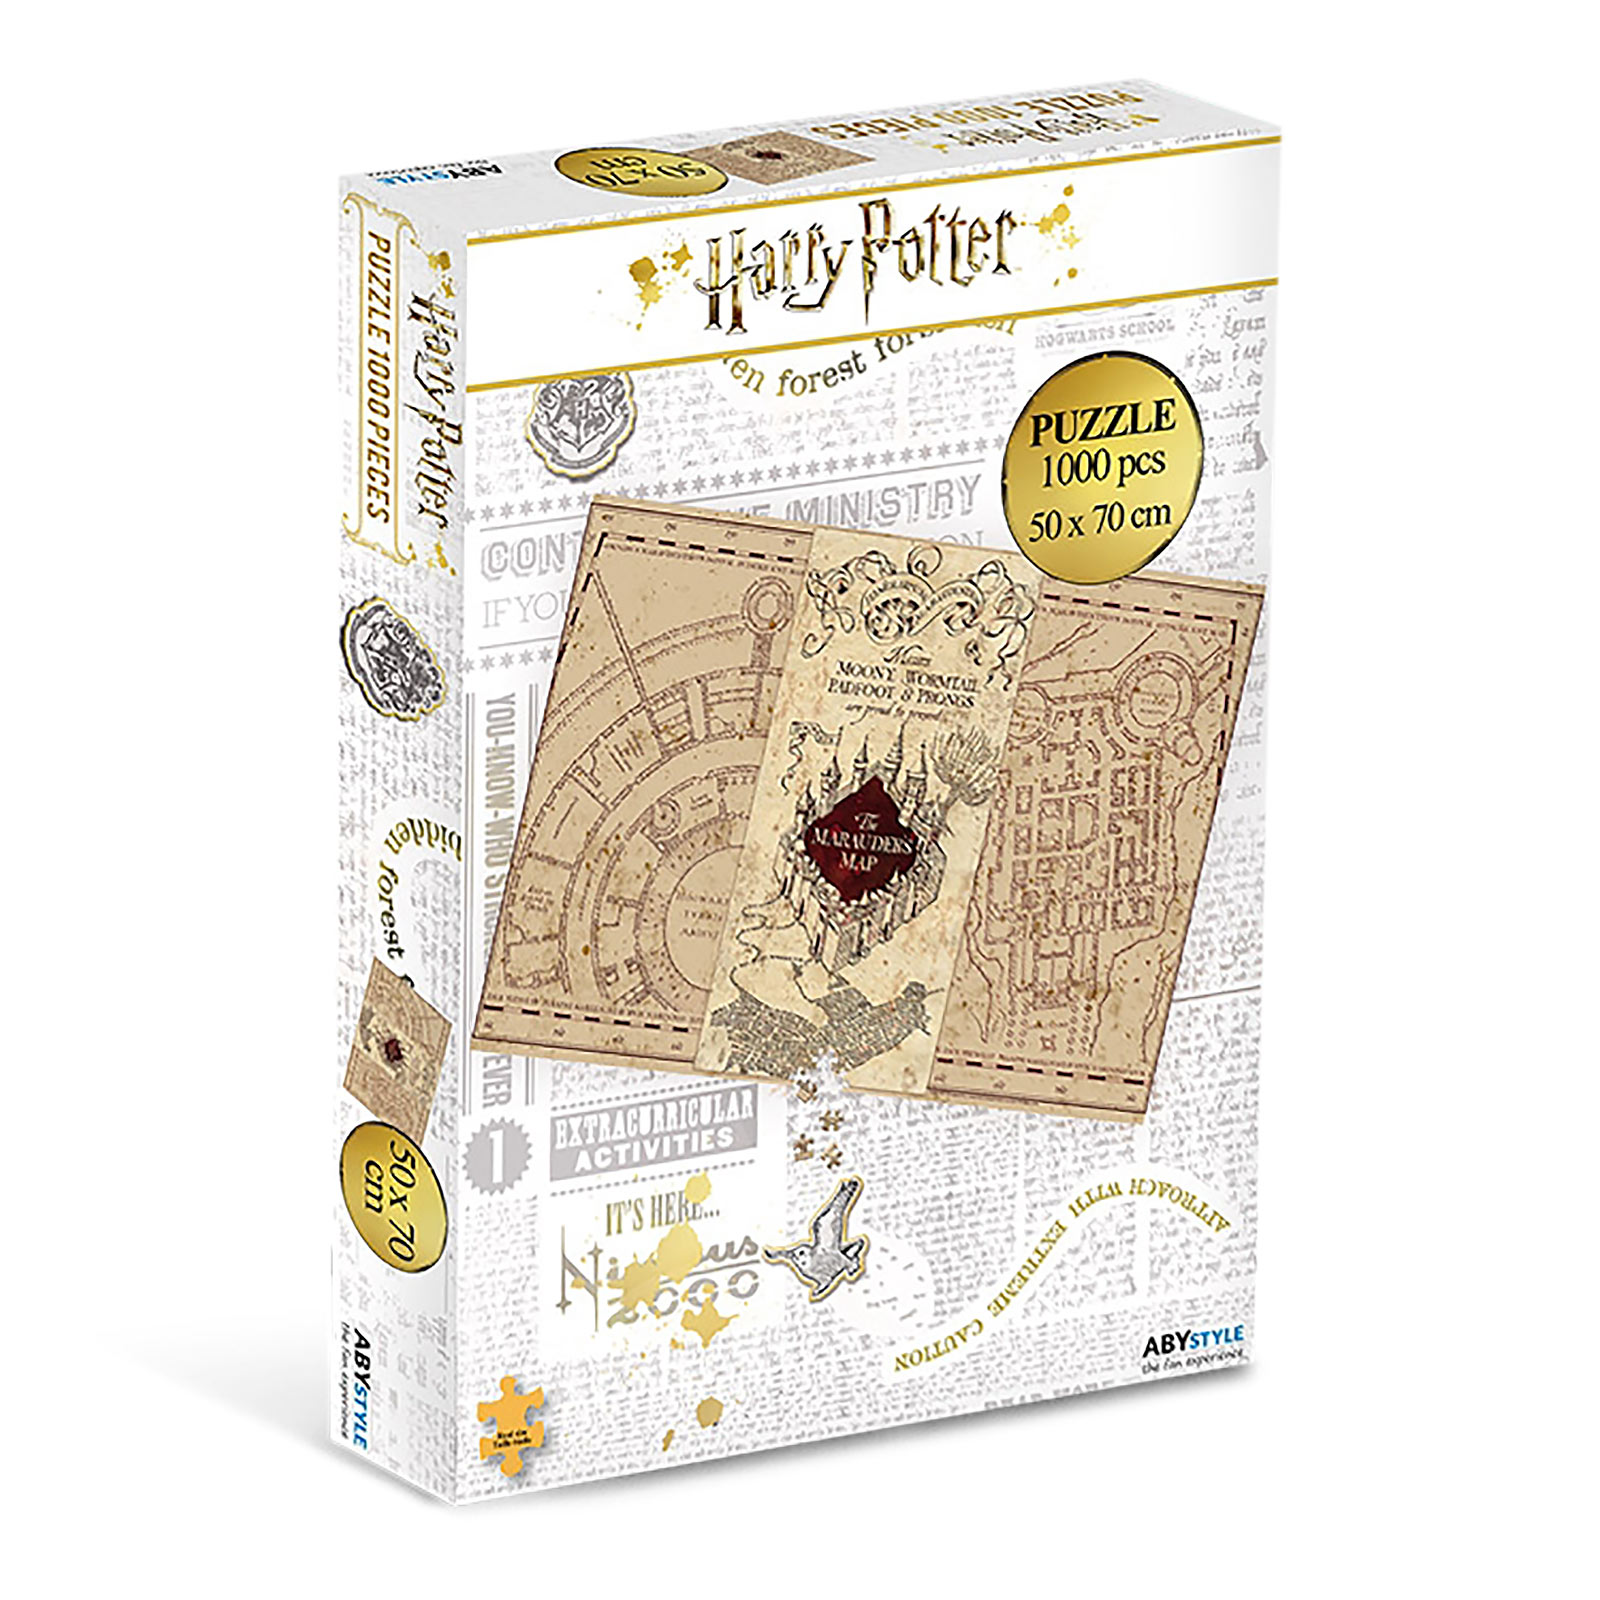 Harry Potter - Marauder's Map Puzzle 1000 Pieces